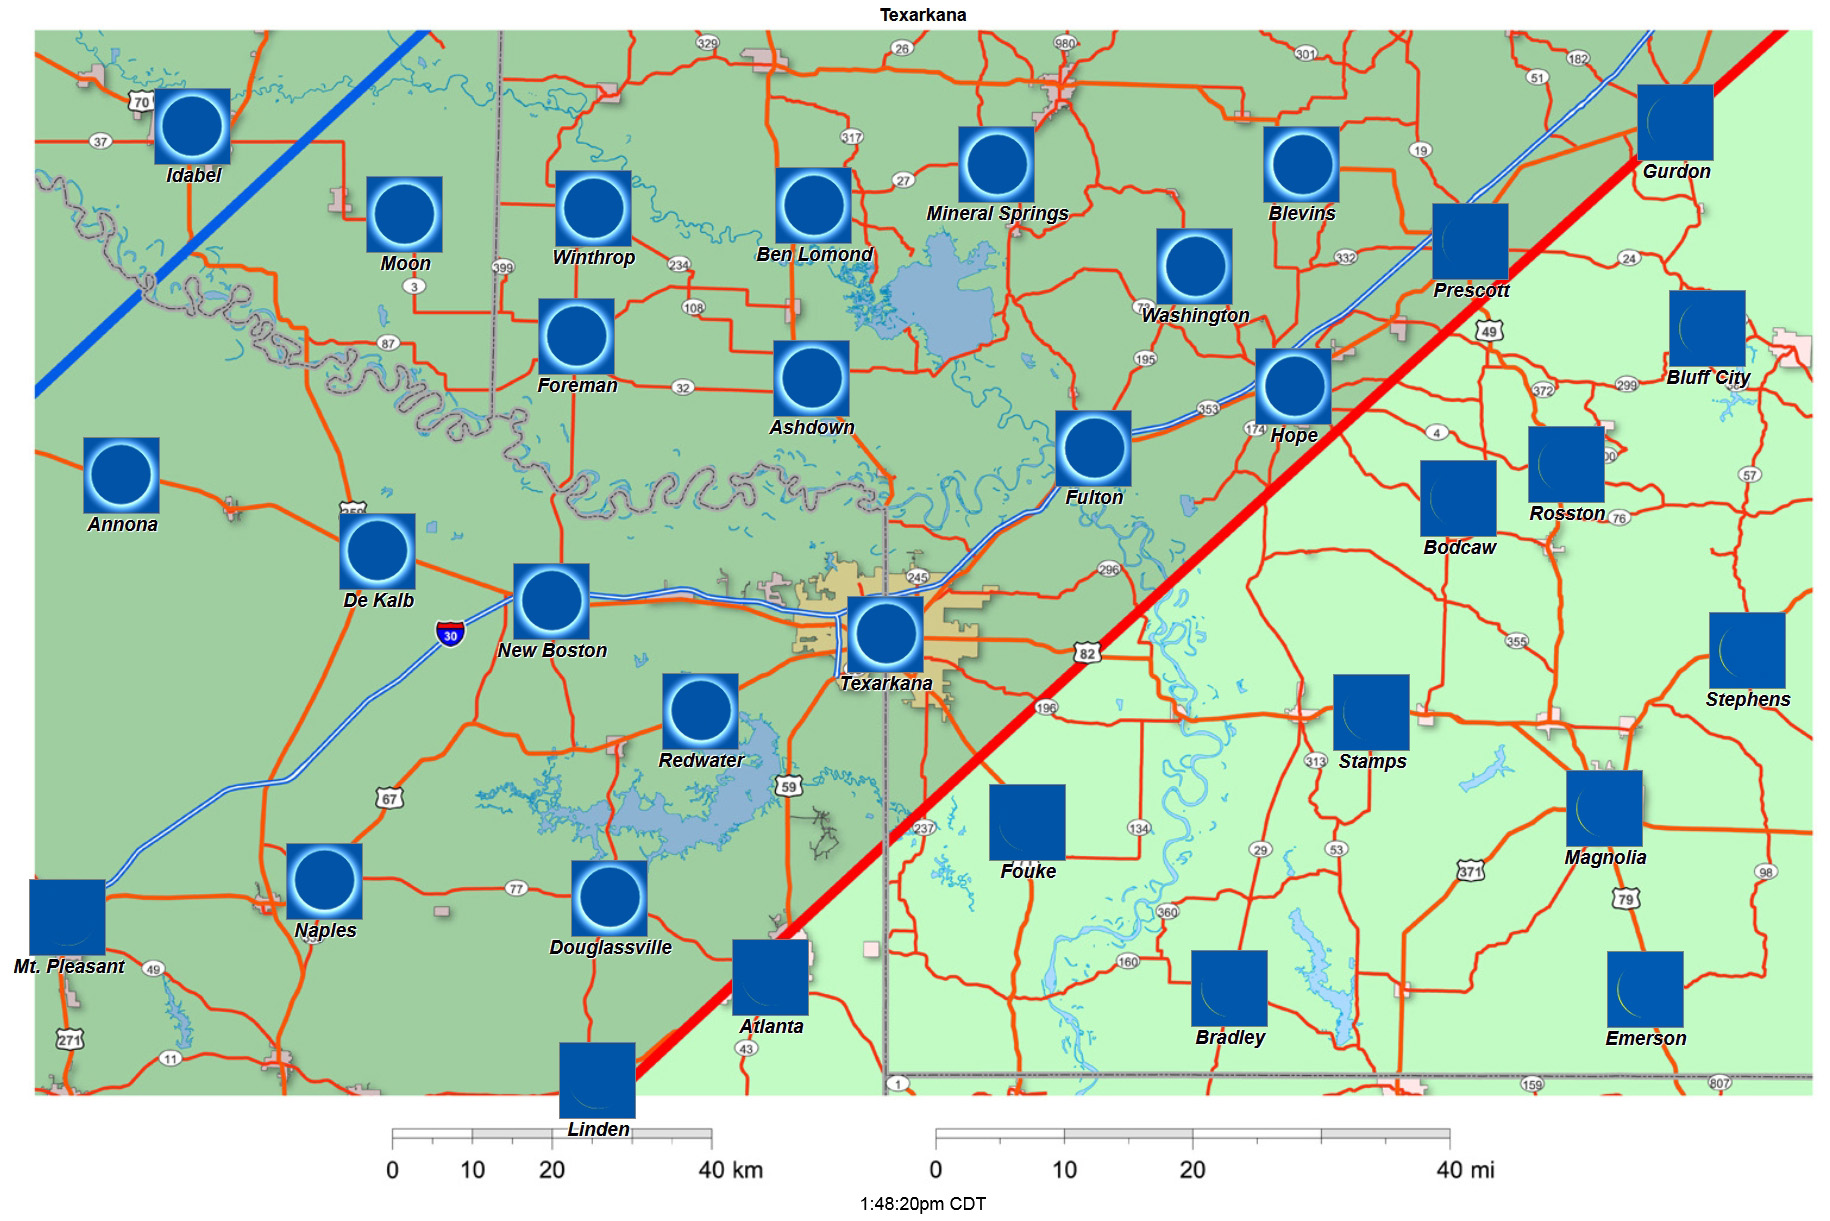 Interactive 2024 eclipse map for Texarkana